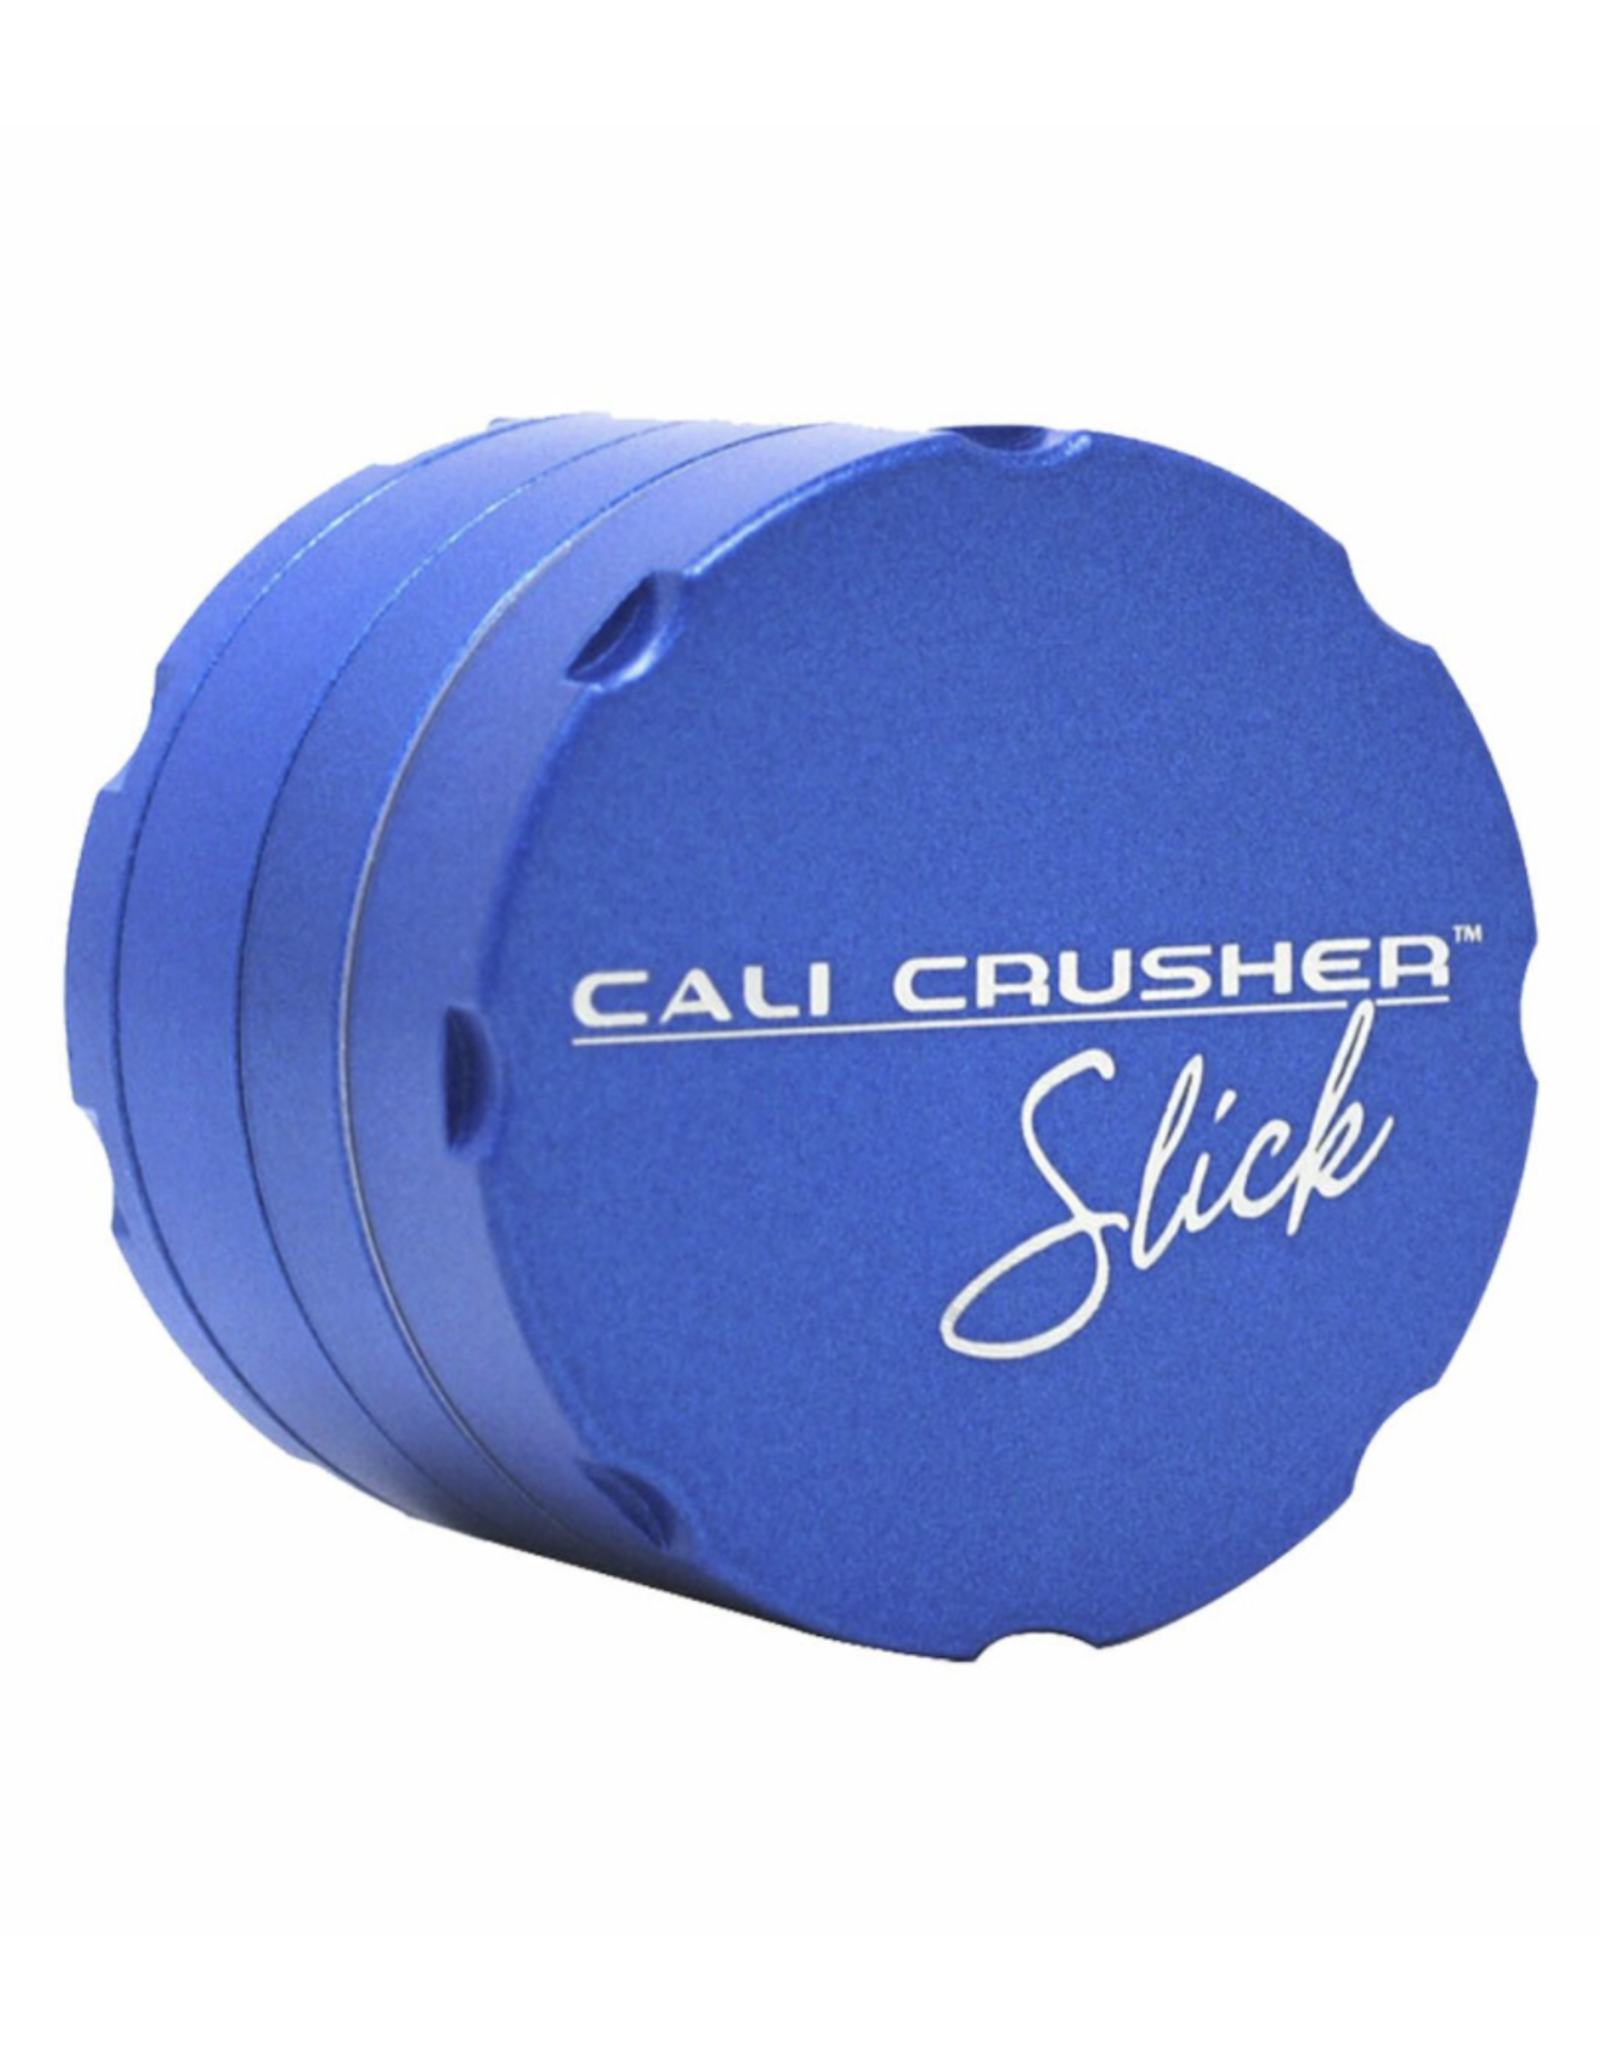 Cali Crusher OG Slick Series 2" 4 Piece Grinder